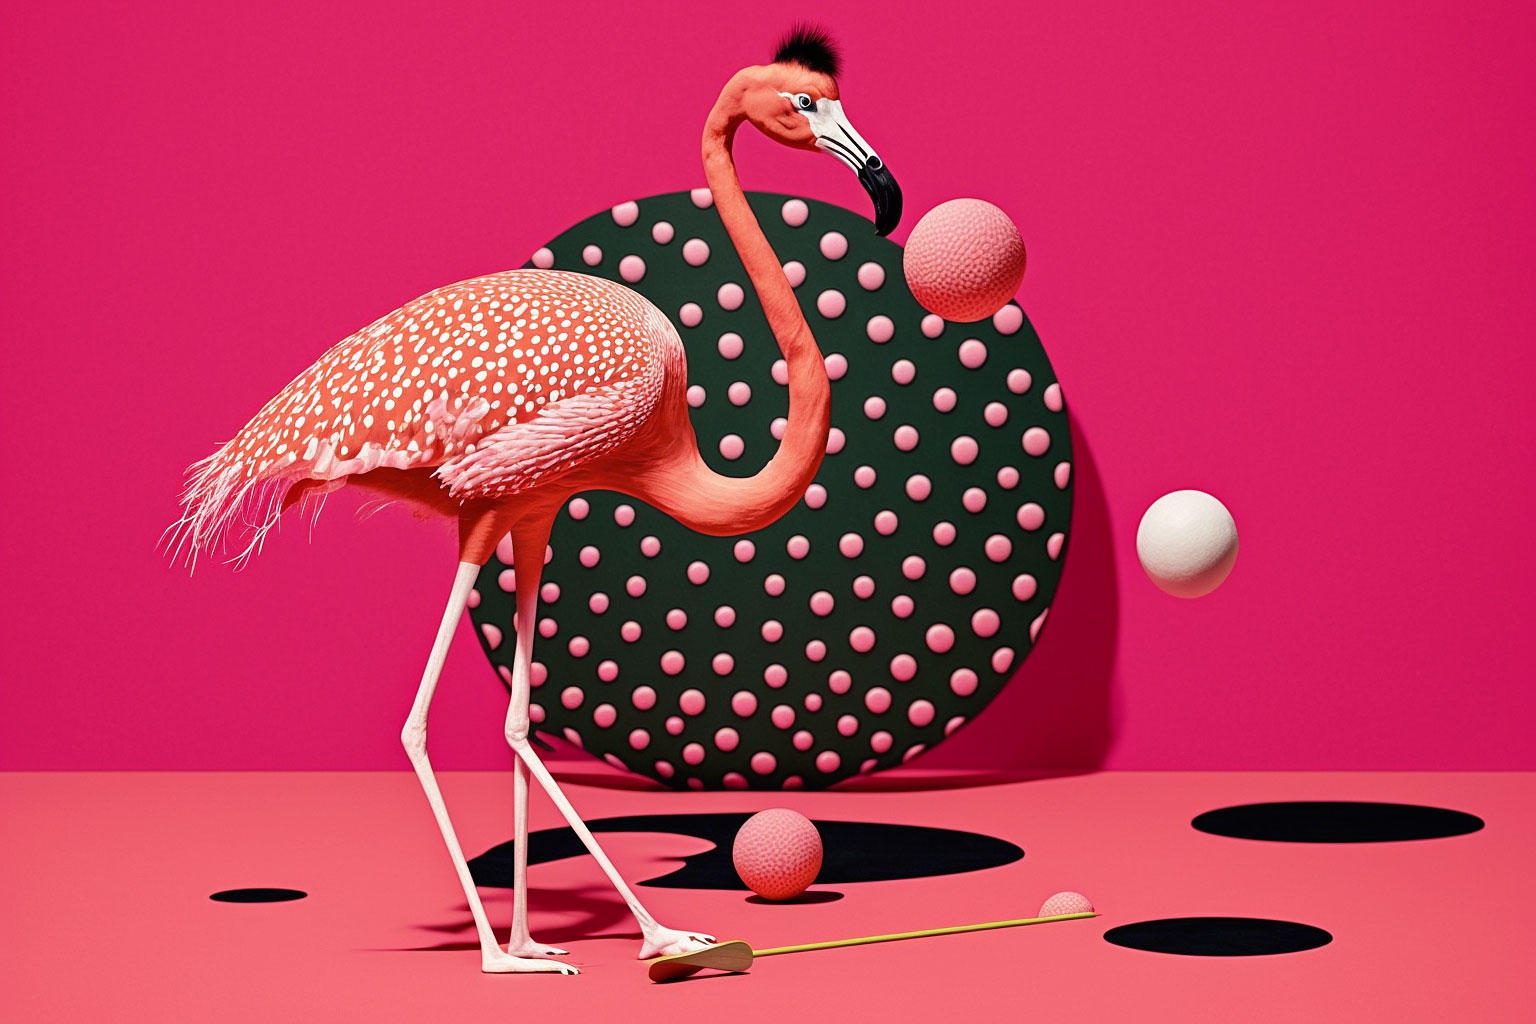 Flamingo playing ping pong